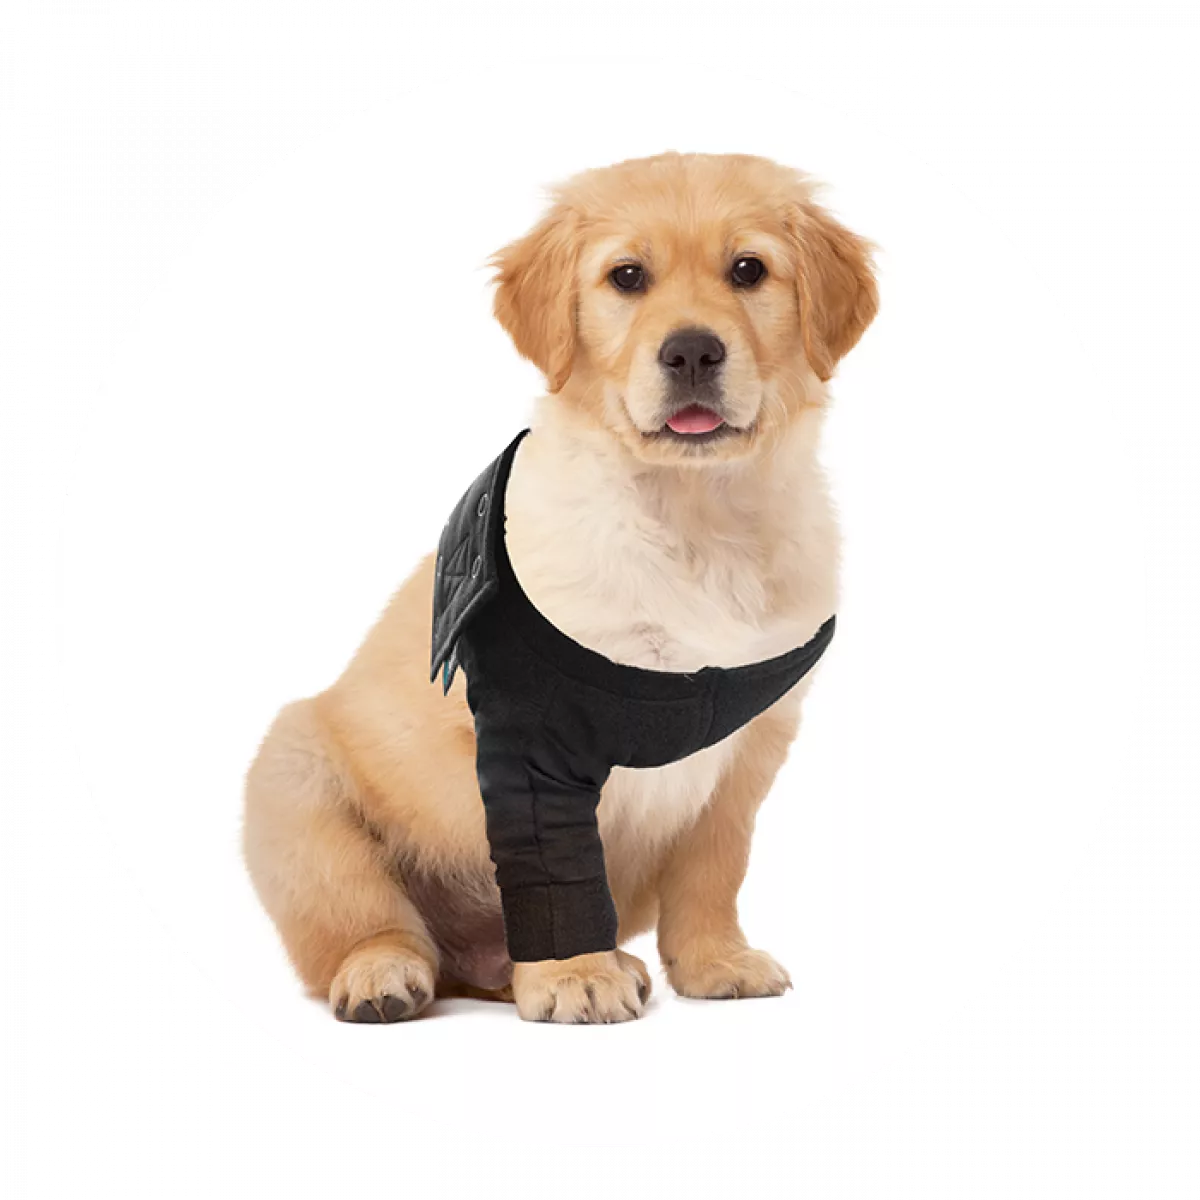 Textiles et accessoires pour chiens Buster Manchon pour Chien